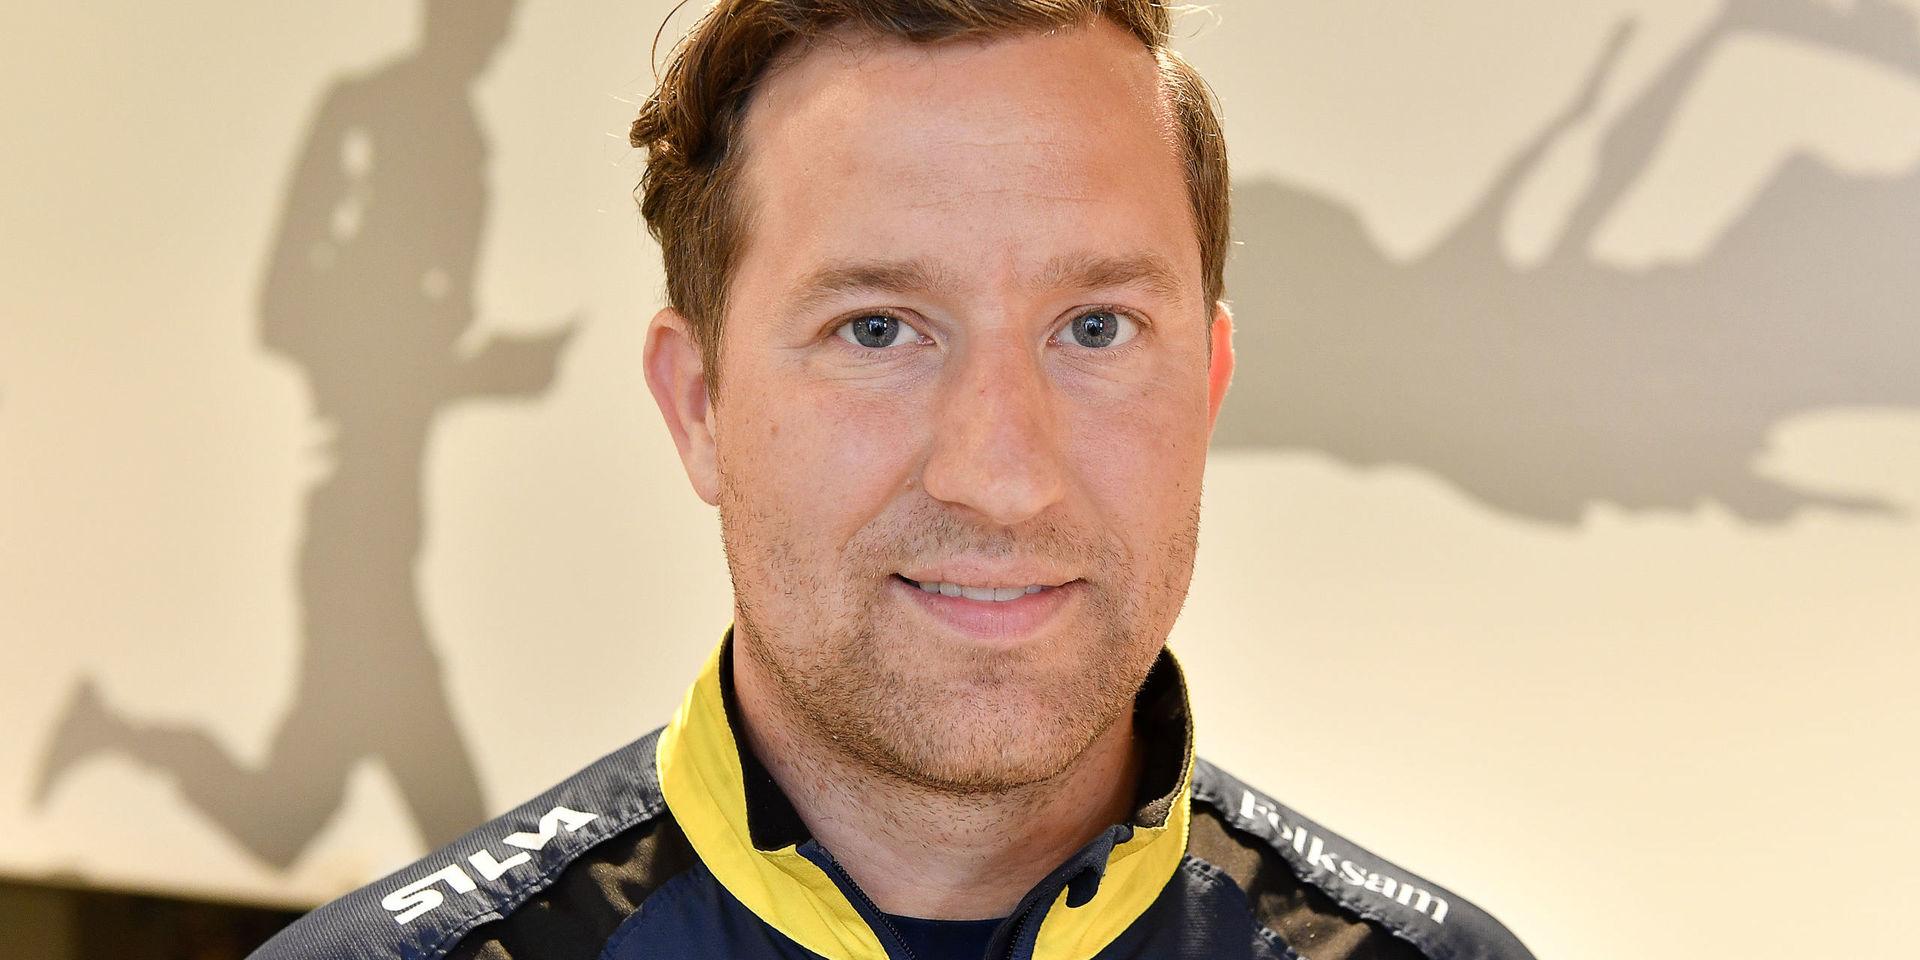 Förbundskapten Håkan Carlsson gläds åt att orienteraren Tove Alexandersson tilldelats Bragdguldet. Arkivbild.